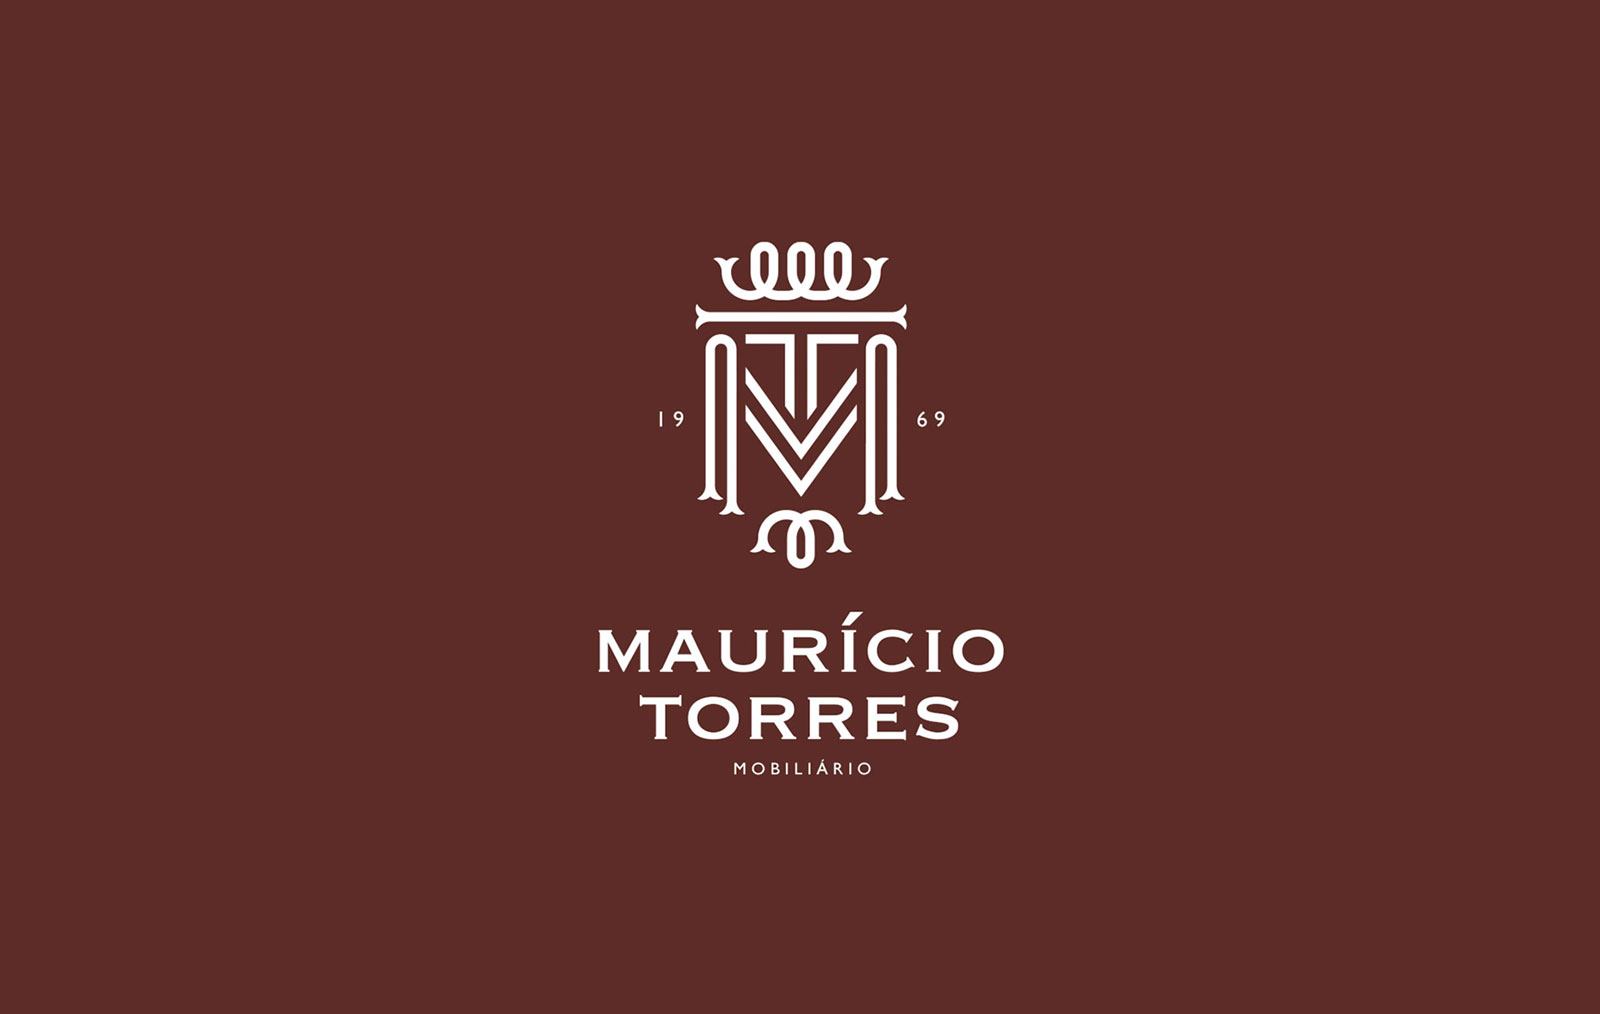 Mauricio Torres